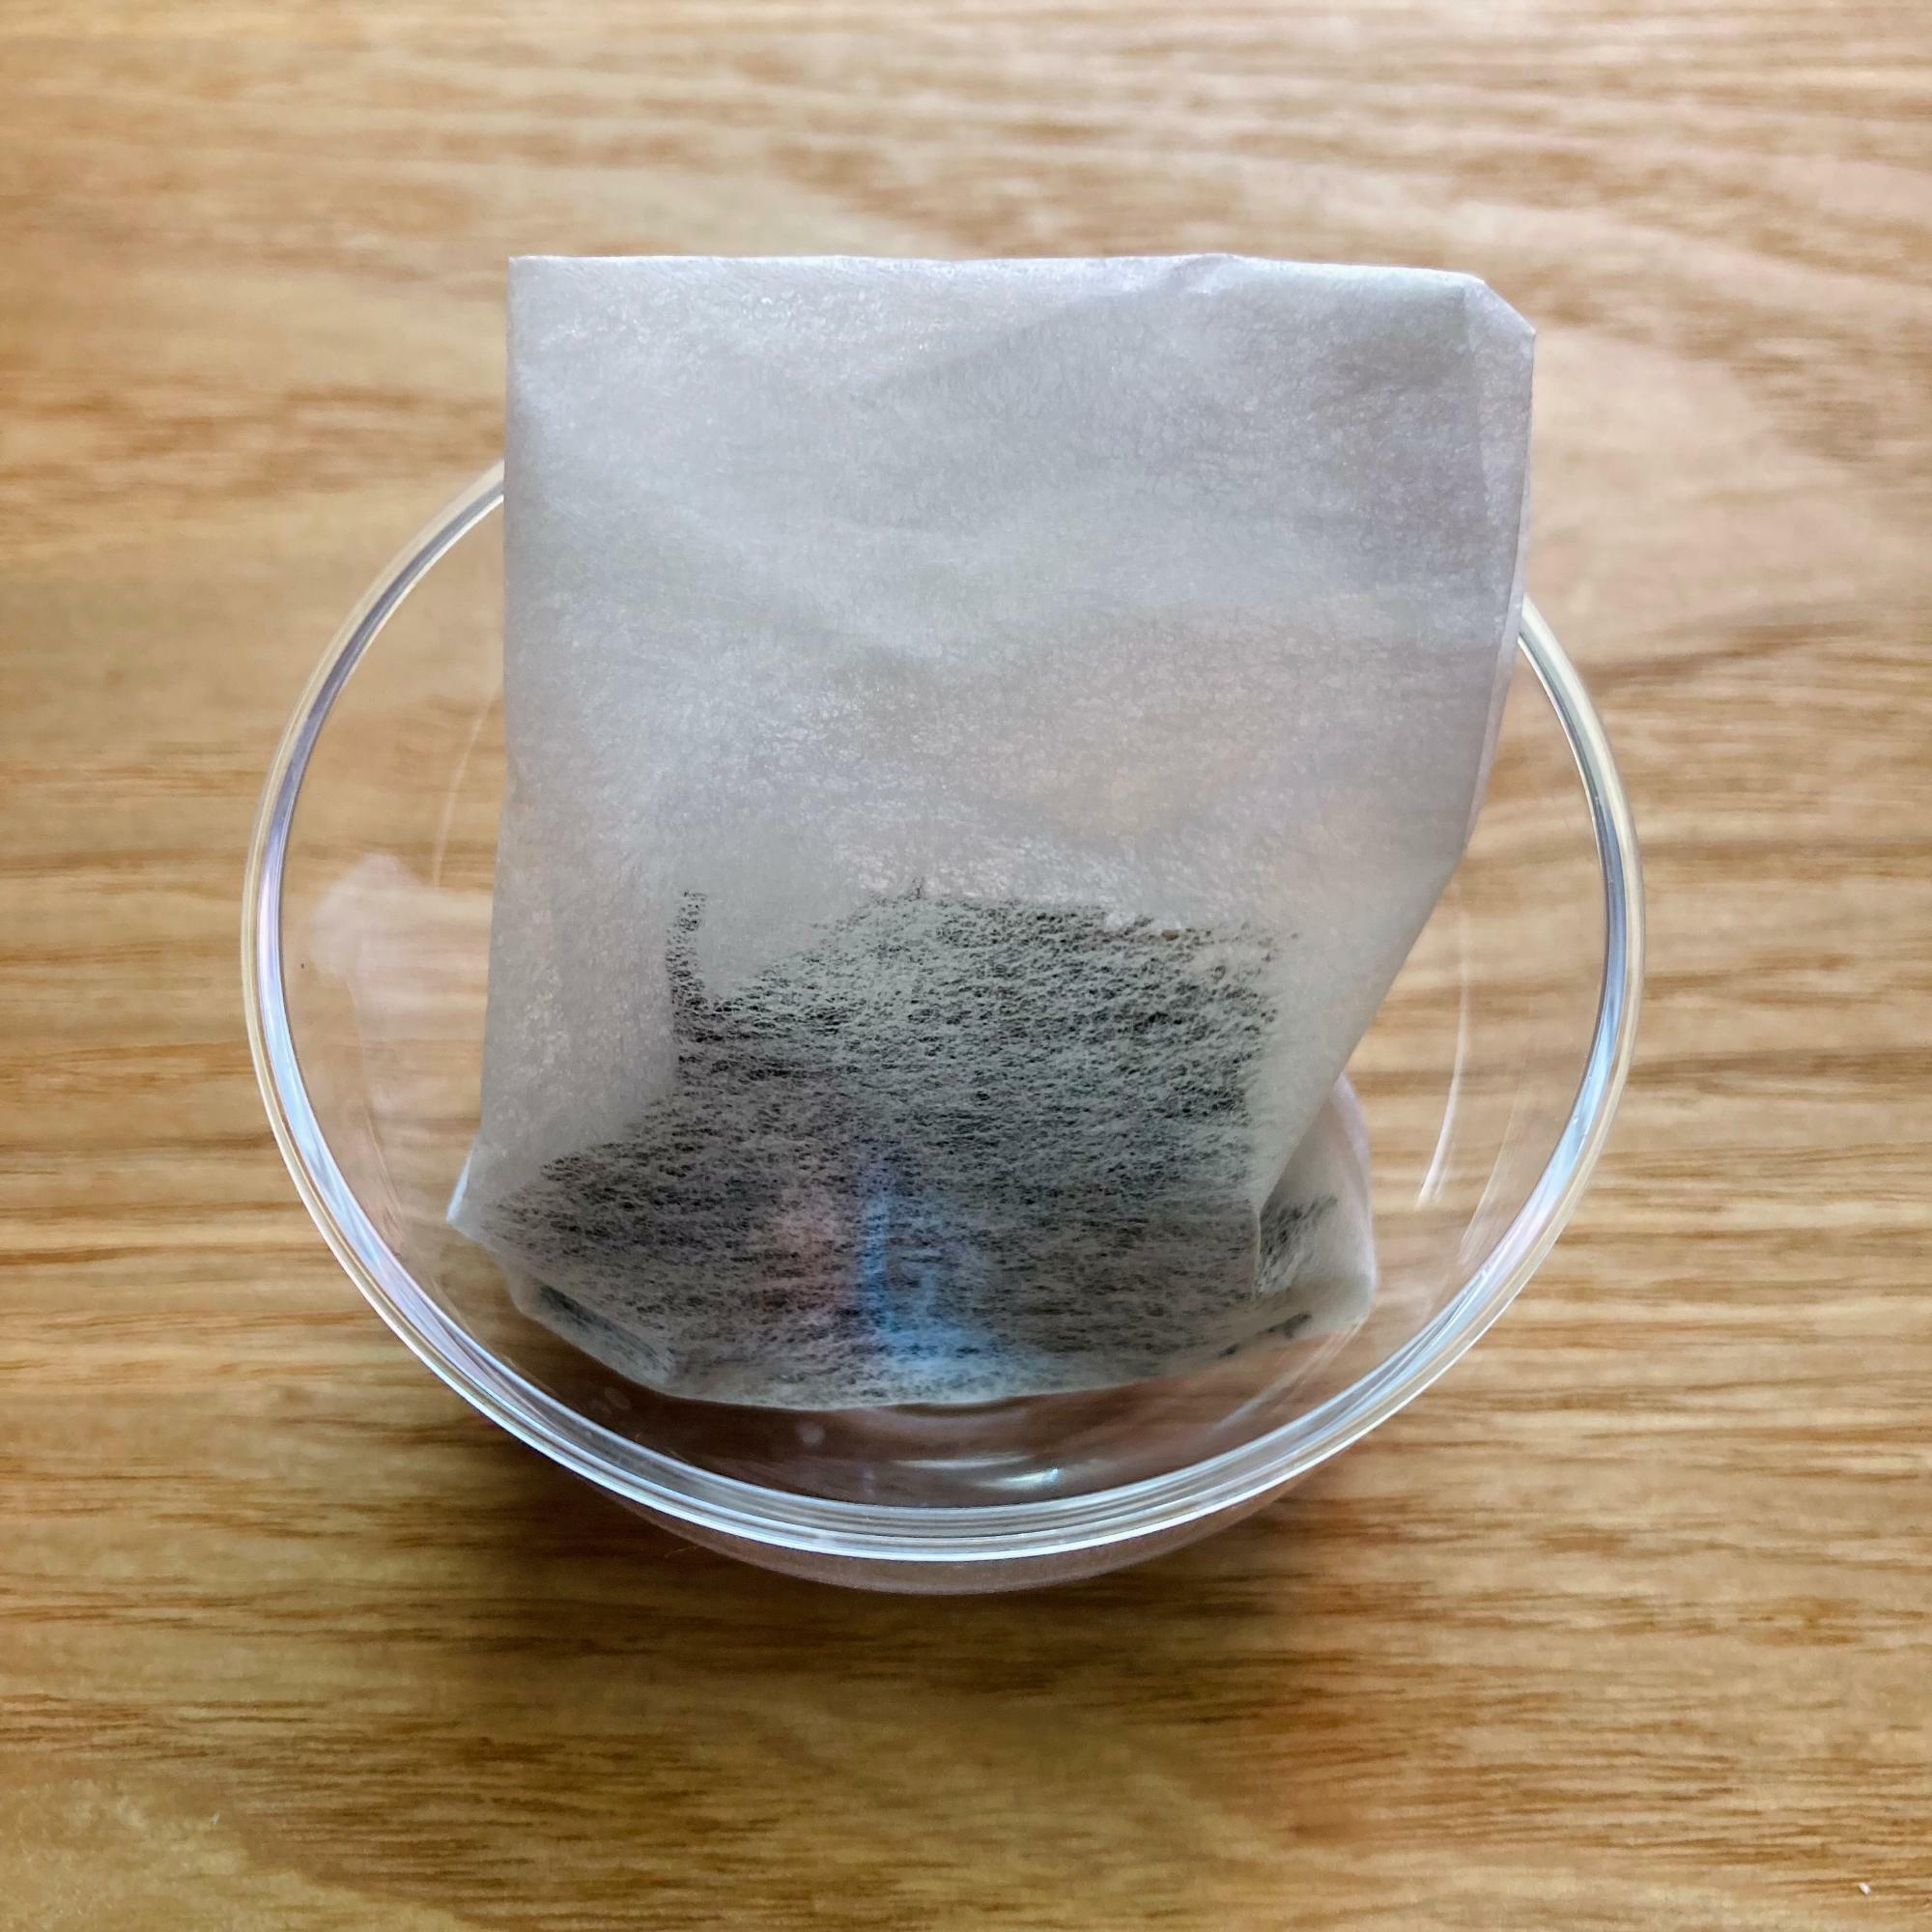 100均のお茶パックに古い茶葉を入れケーキが入っていたプラスチックのカップに入れました。このまま冷蔵庫など匂いの気になる場所へ置きます。